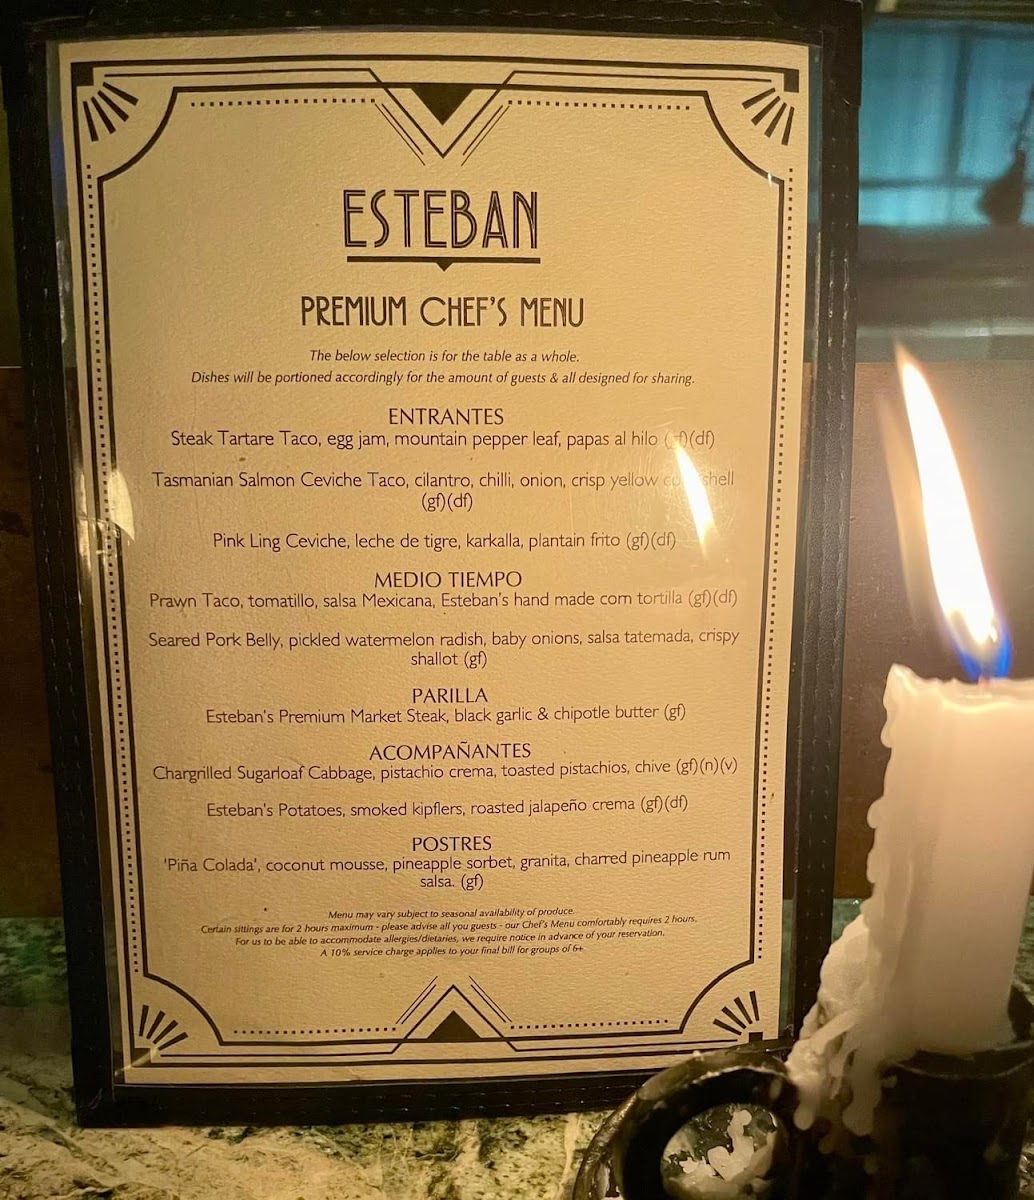 Esteban gluten-free menu